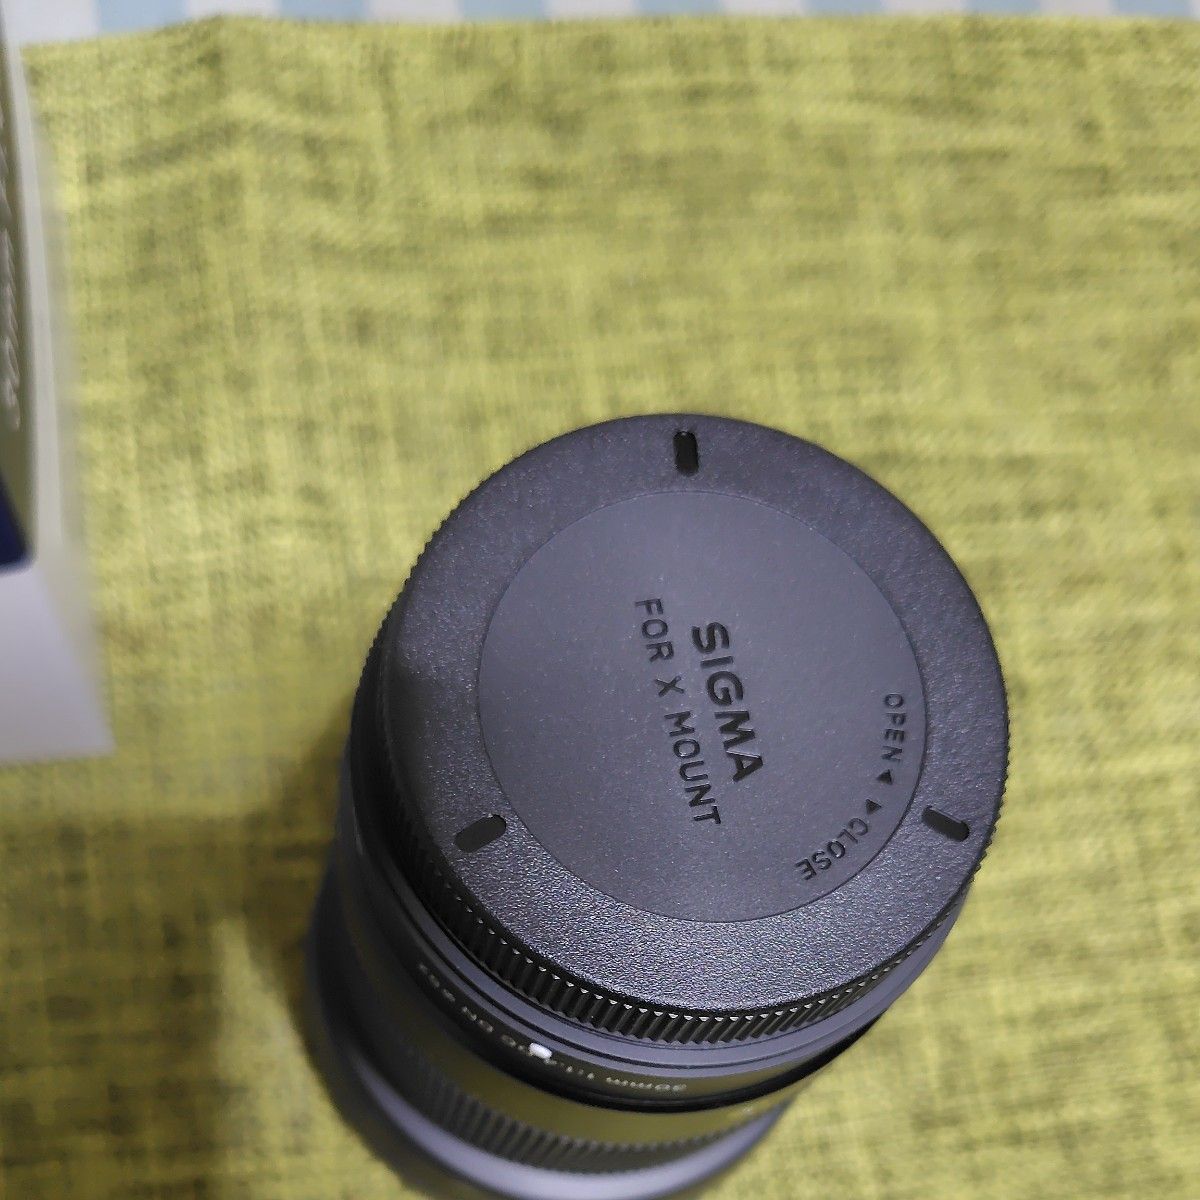 中古 美品 SIGMA 30mm F1.4  DC DN フジXマウント 限定レンズケースセット